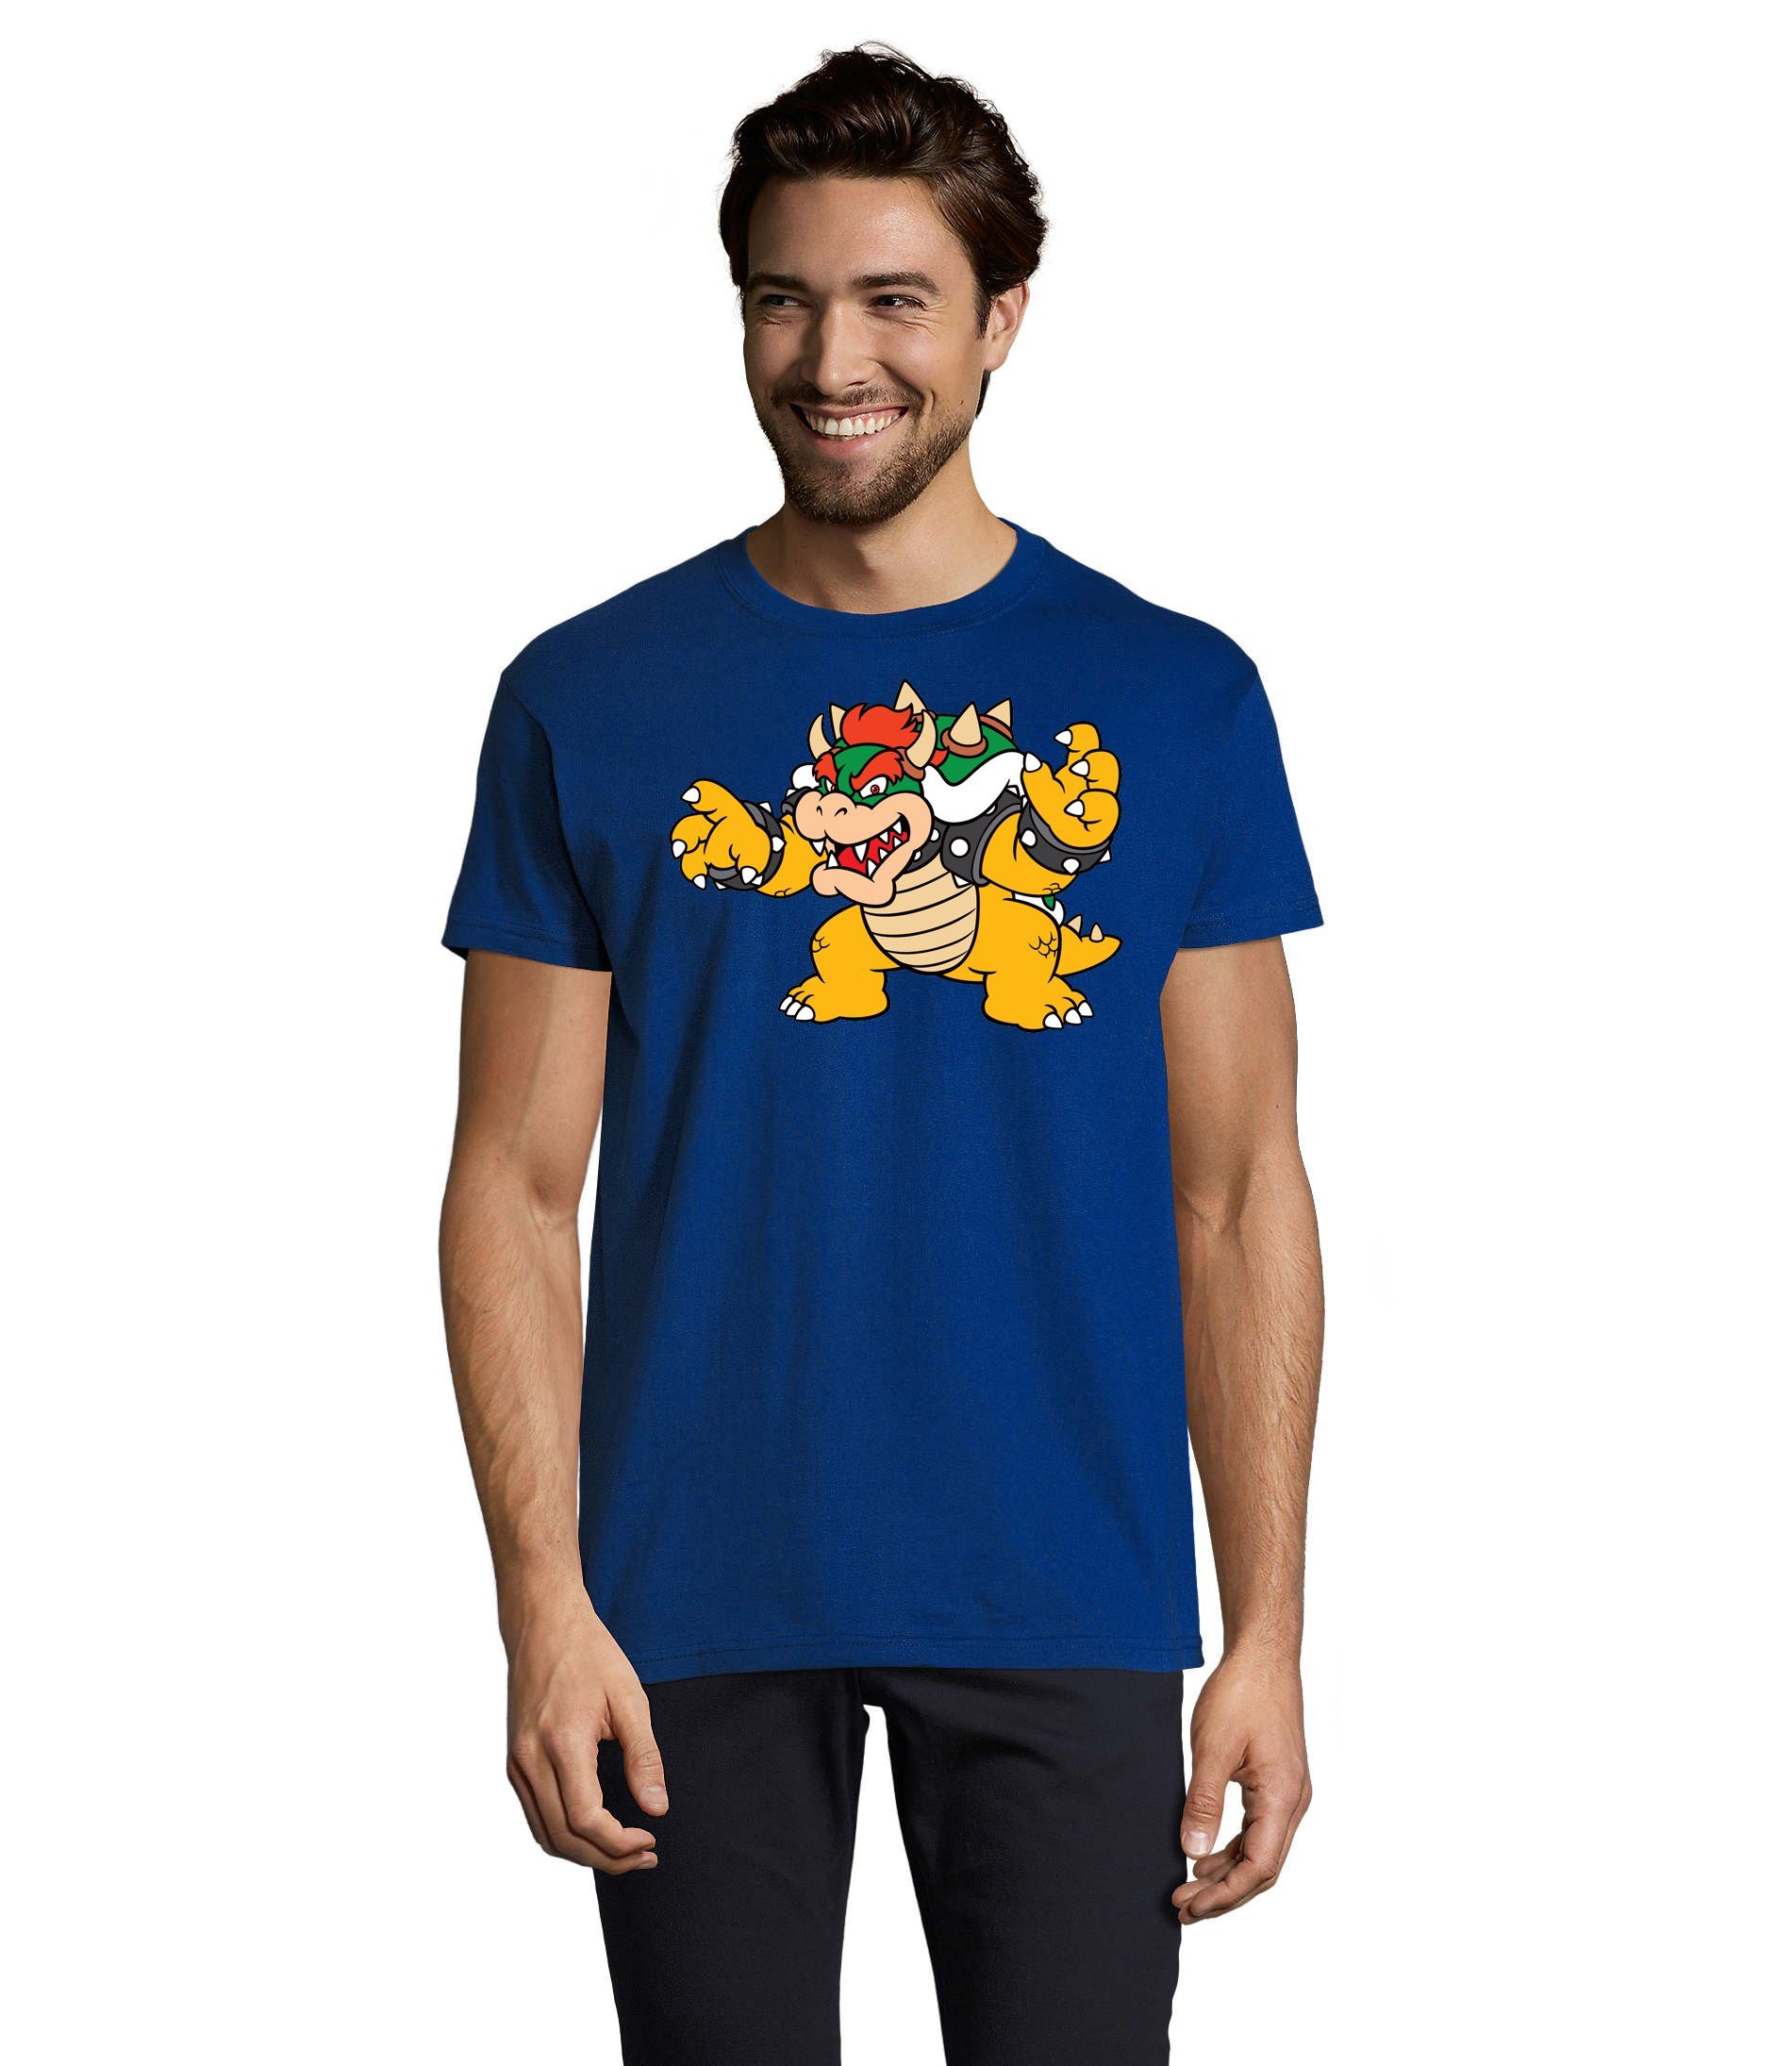 Blondie & Brownie T-Shirt Herren Nintendo Mario Yoshi Luigi Game Gamer Gaming Konsole Blau